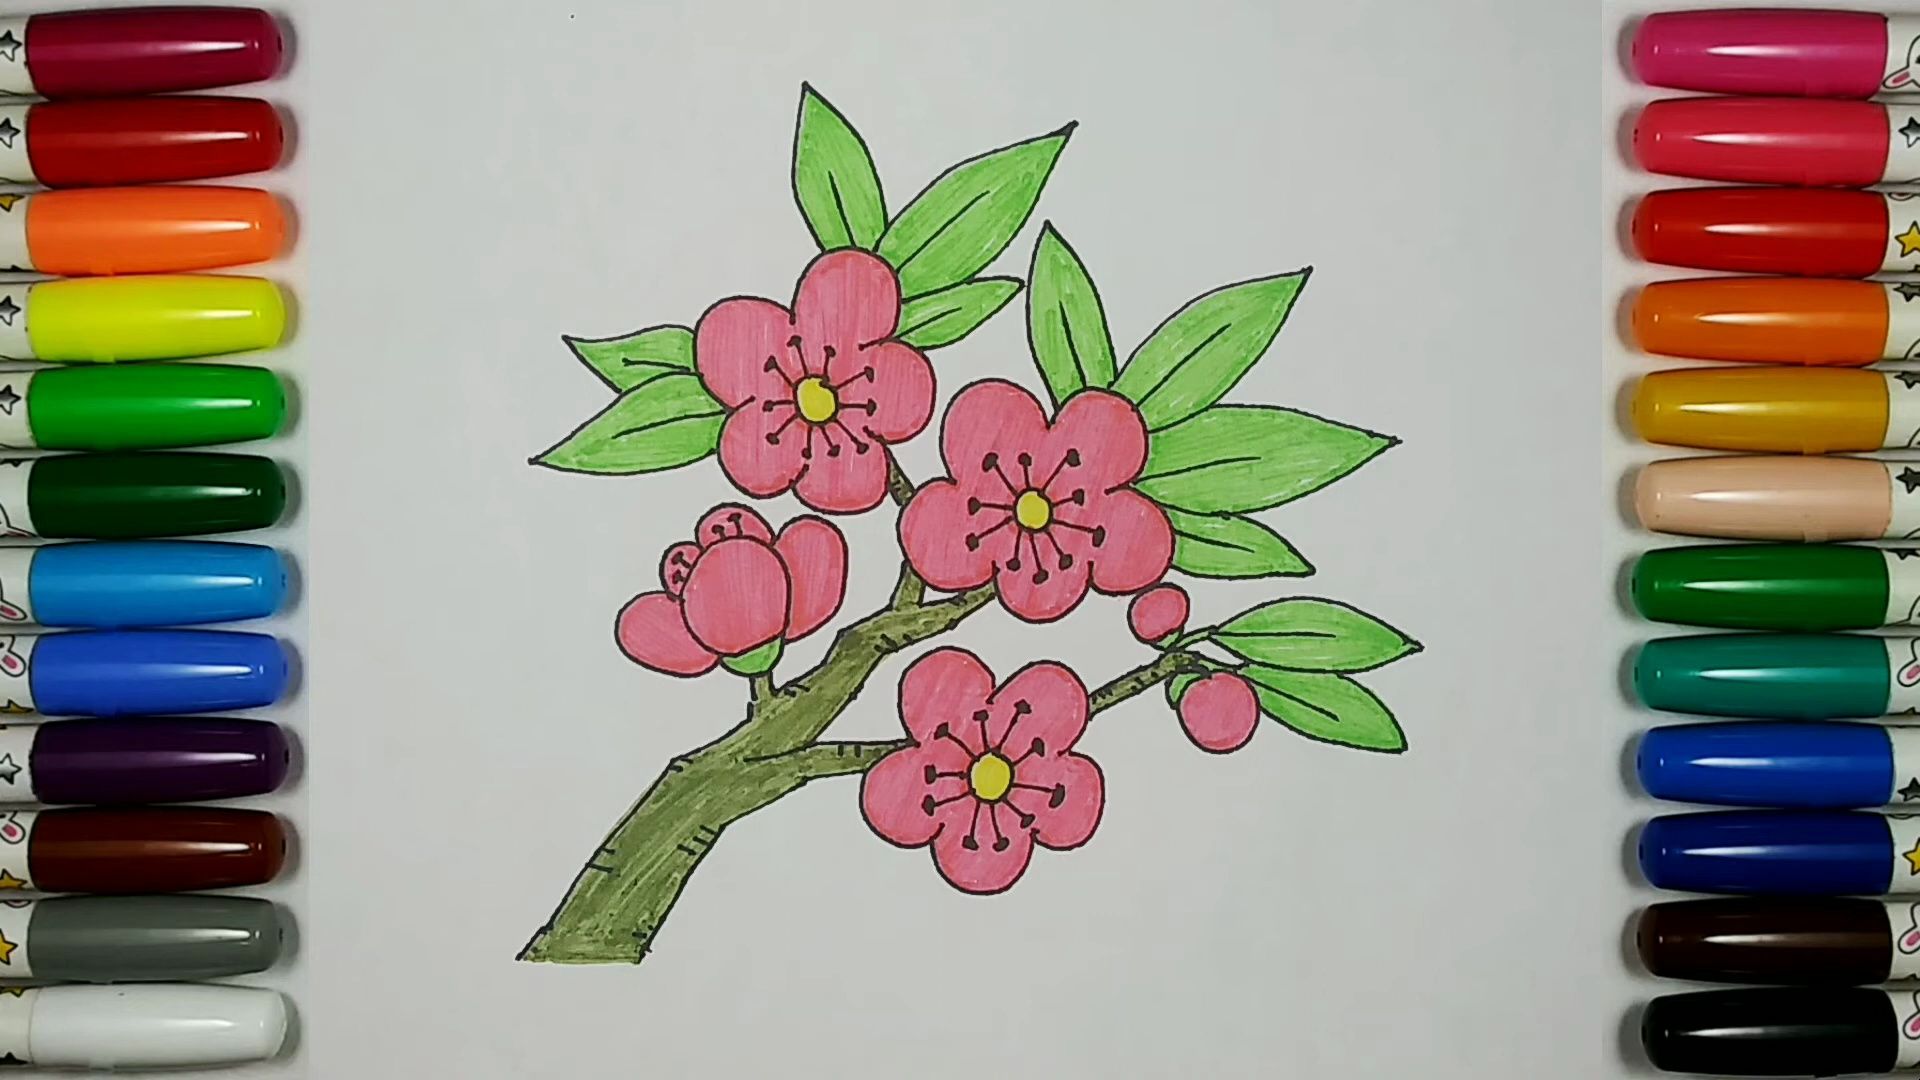 【儿童简笔画教程】画一树繁花盛开的桃花:迎接春天的到来!